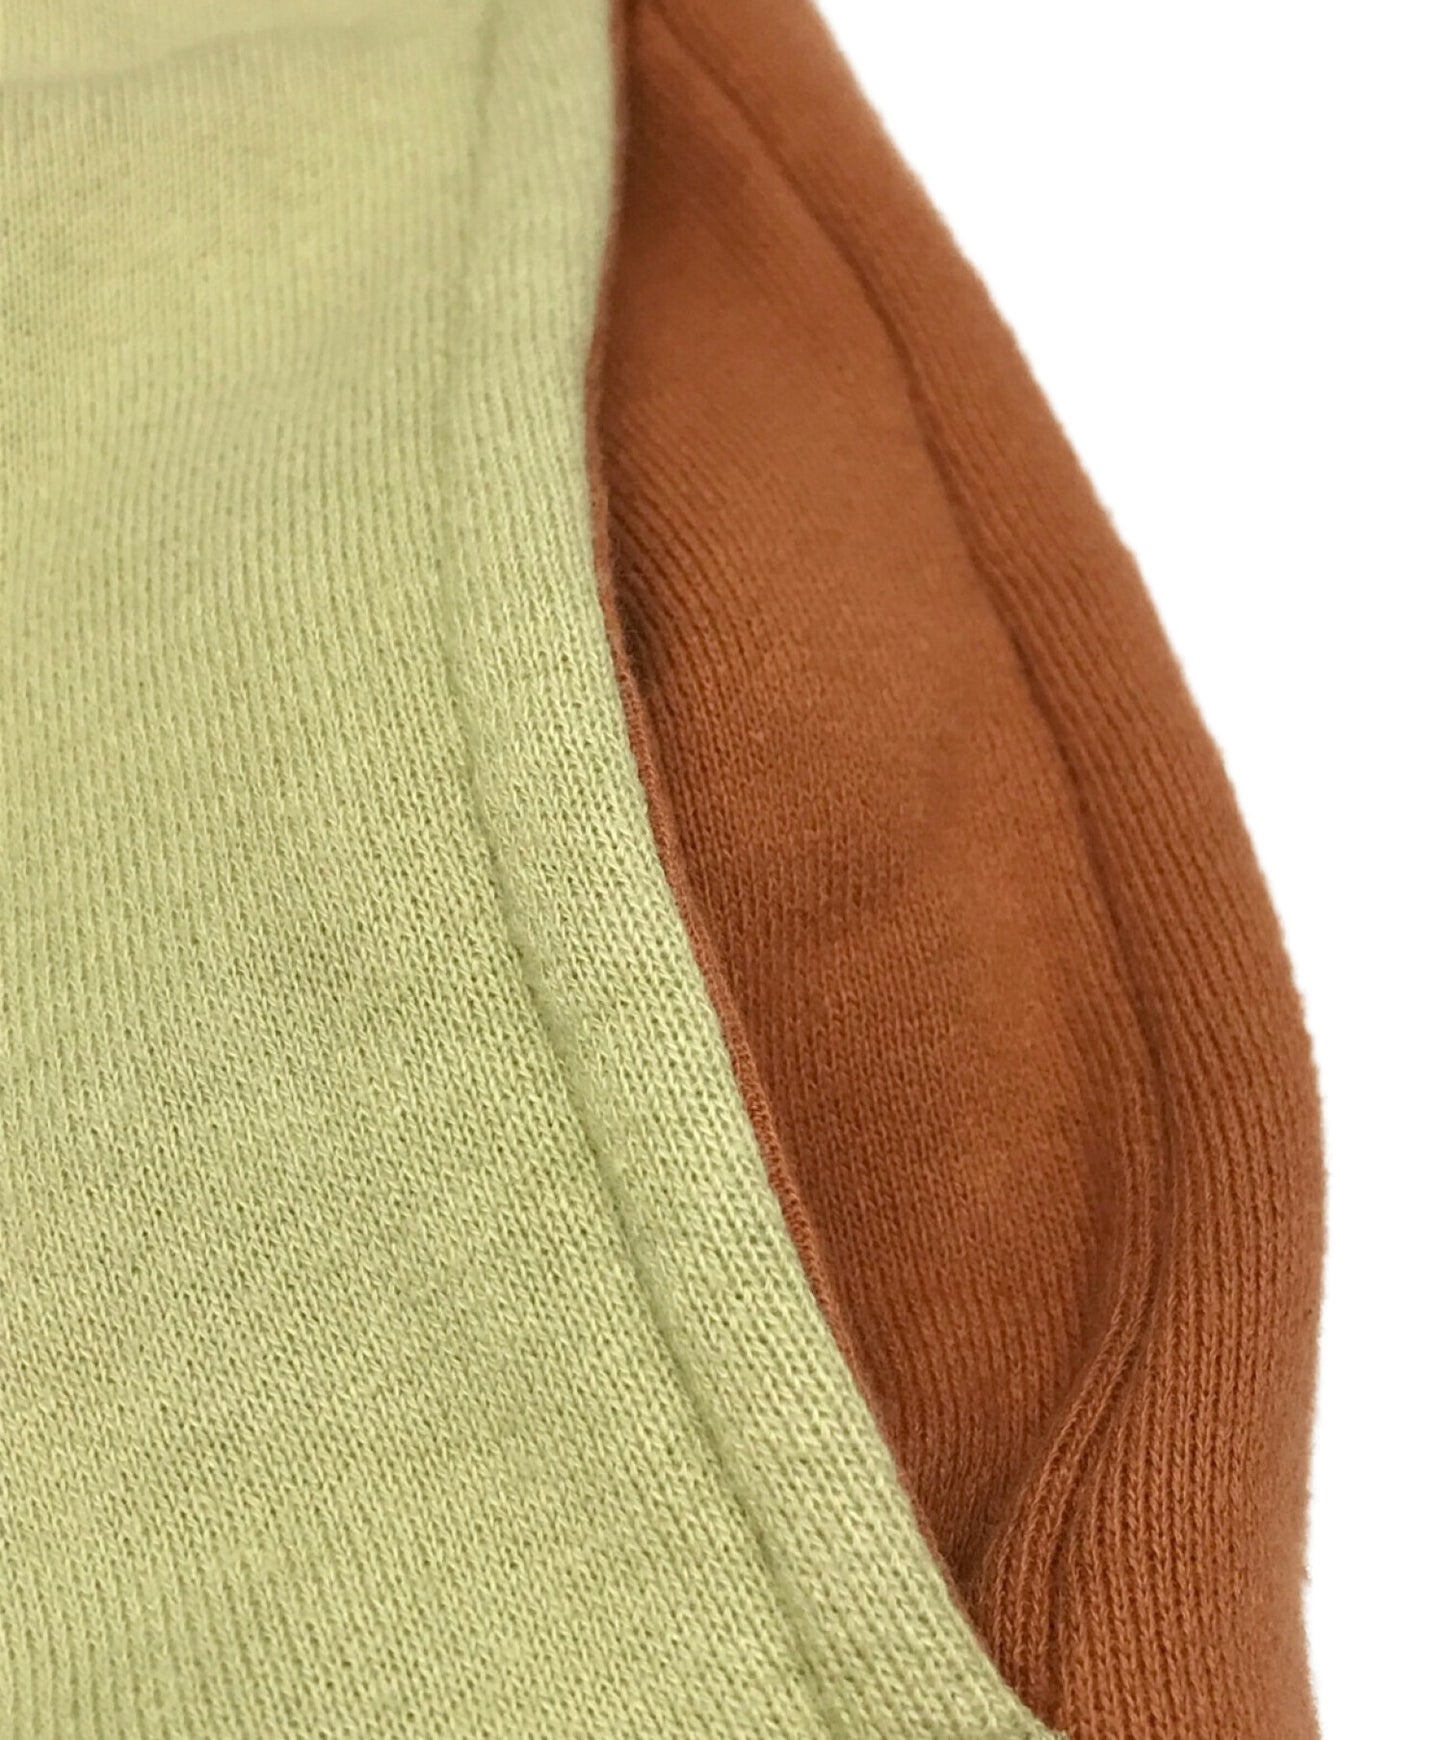 卧底发条橙色的高领衫印刷运动衫UCX4805-1